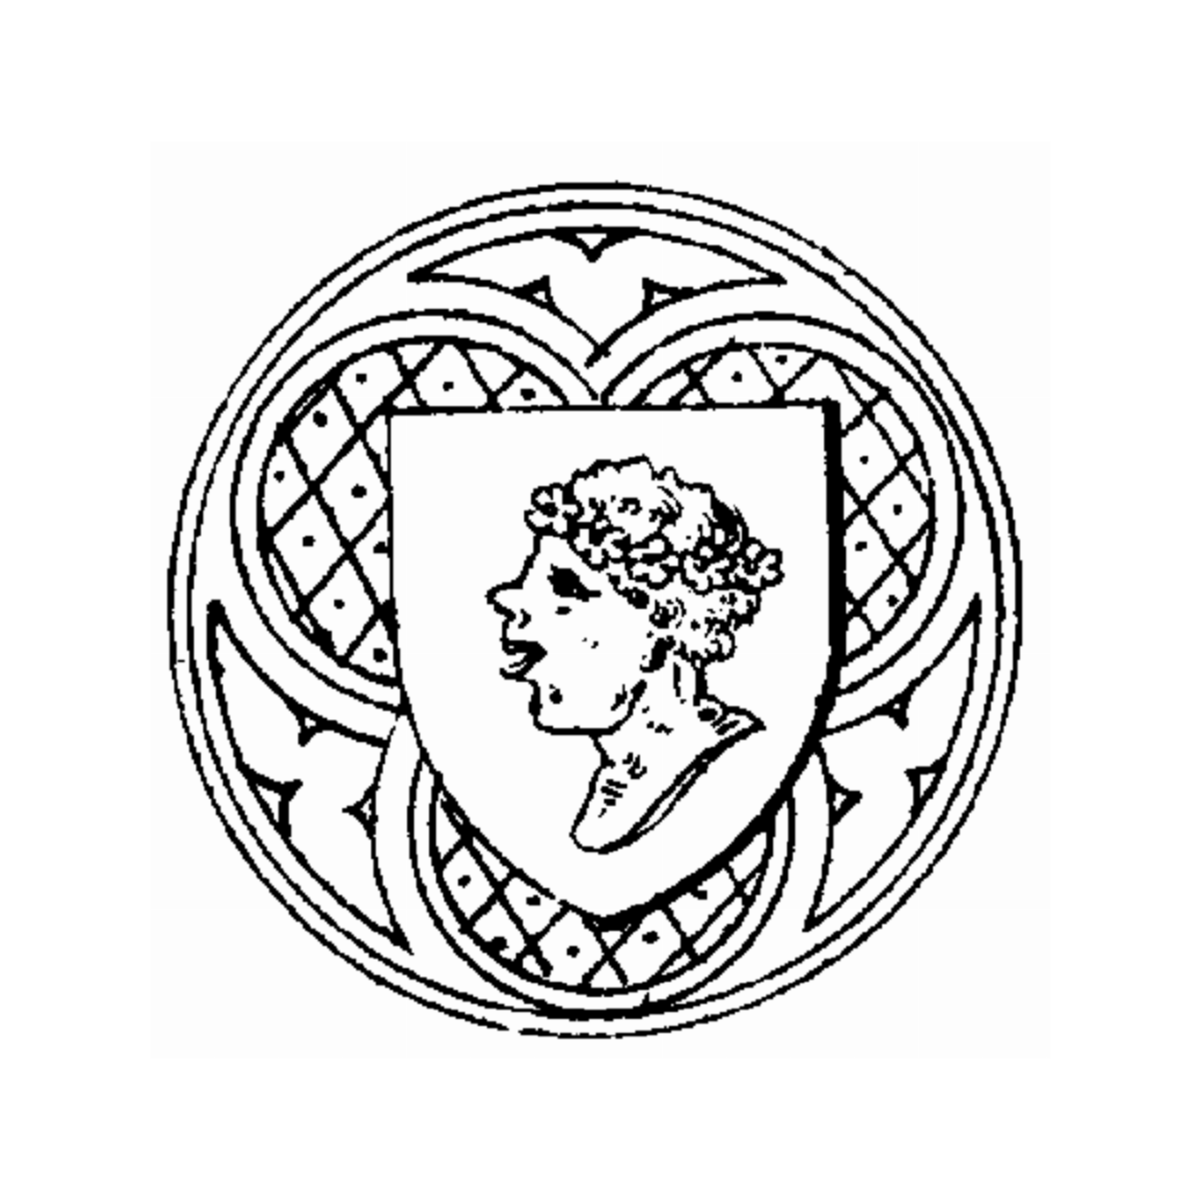 Wappen der Familie Attems